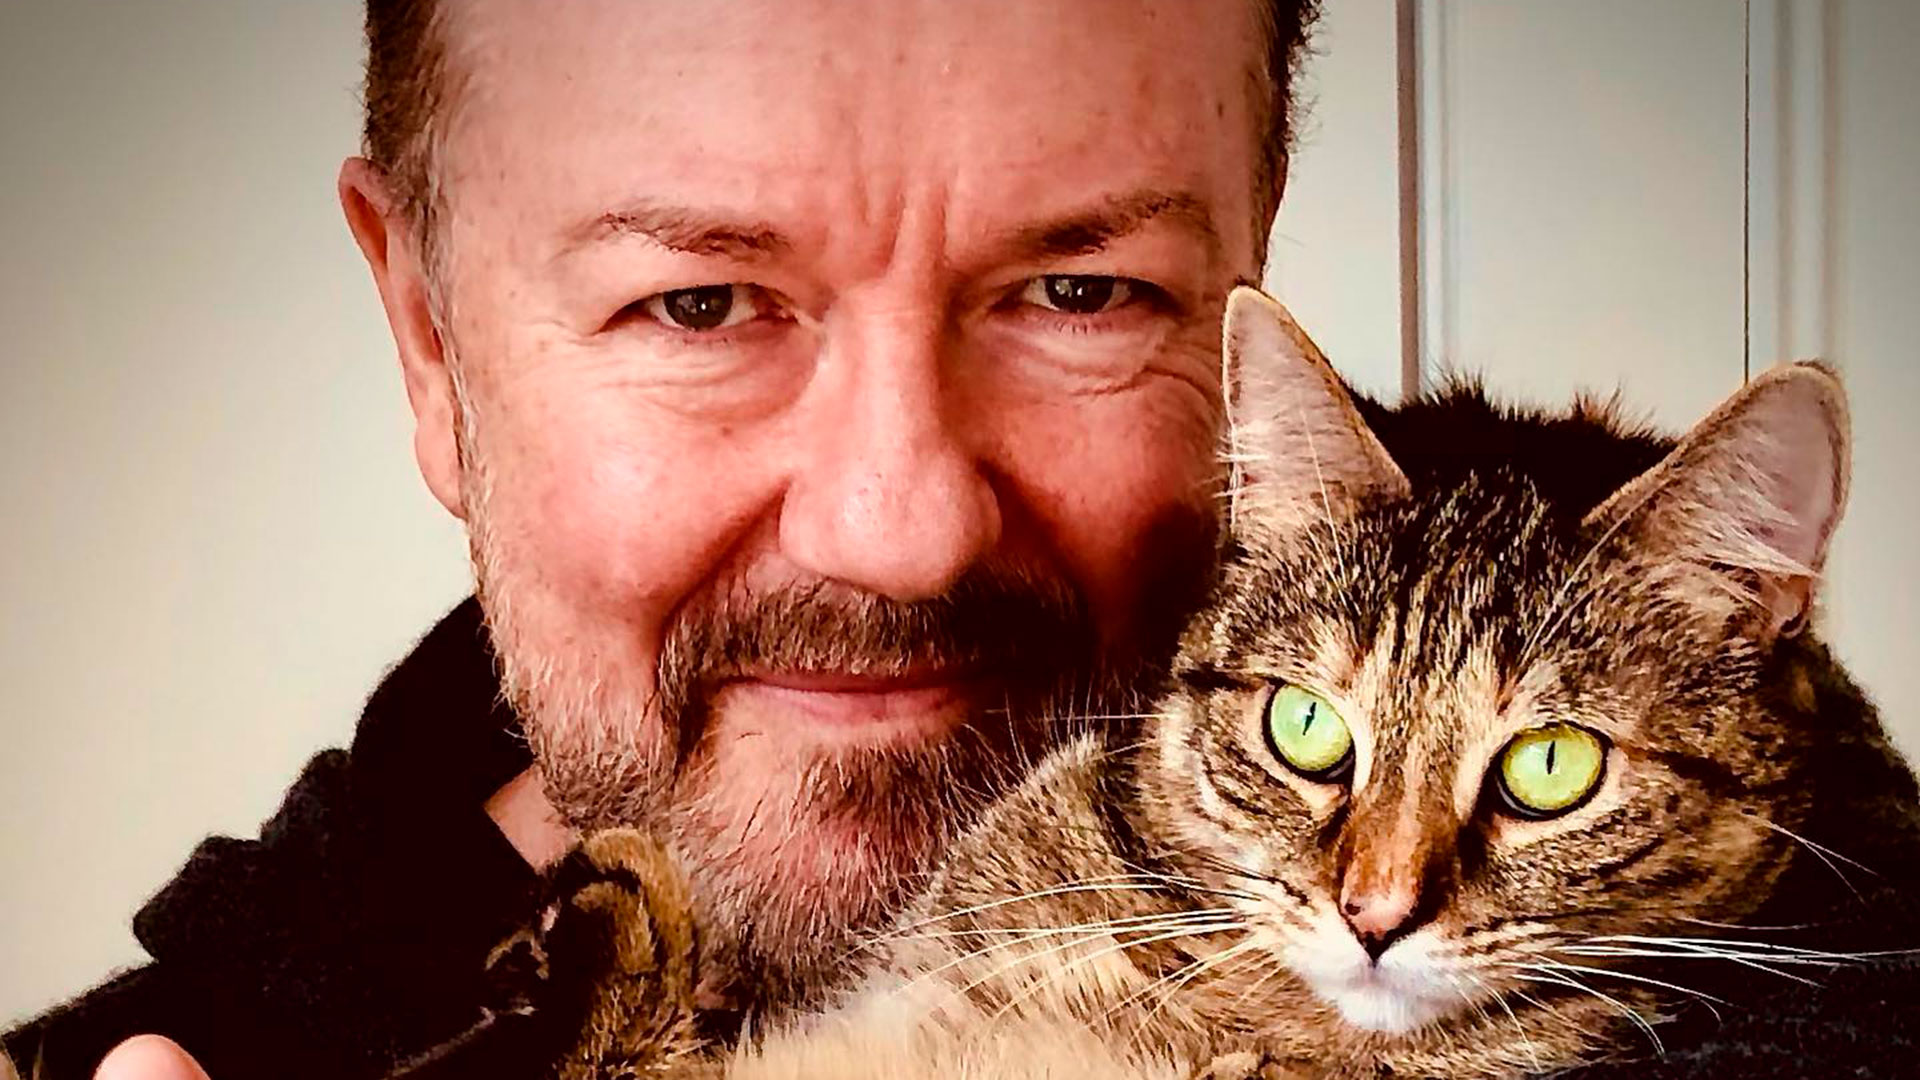 Ricky Gervais ama a los animales y es un férreo defensor de sus derechos. Tras la muerte de su gata Ollie, en 2020, adoptó a Pickle (@rickygervais)